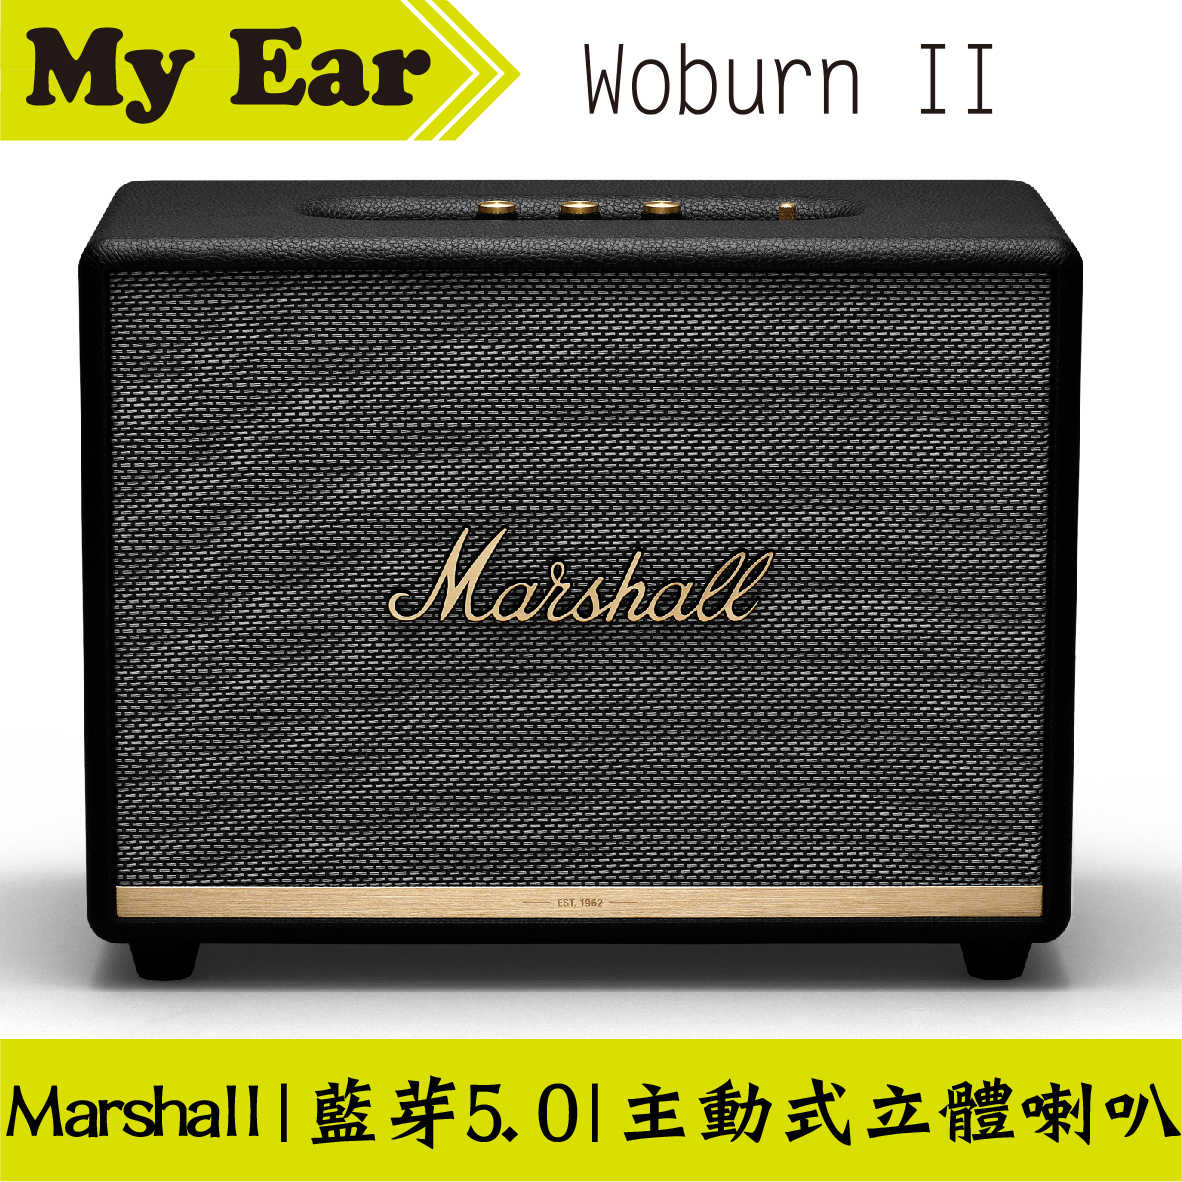 Marshall Woburn II 二代 藍芽 喇叭 音響 奶油白 | My Ear耳機專門店